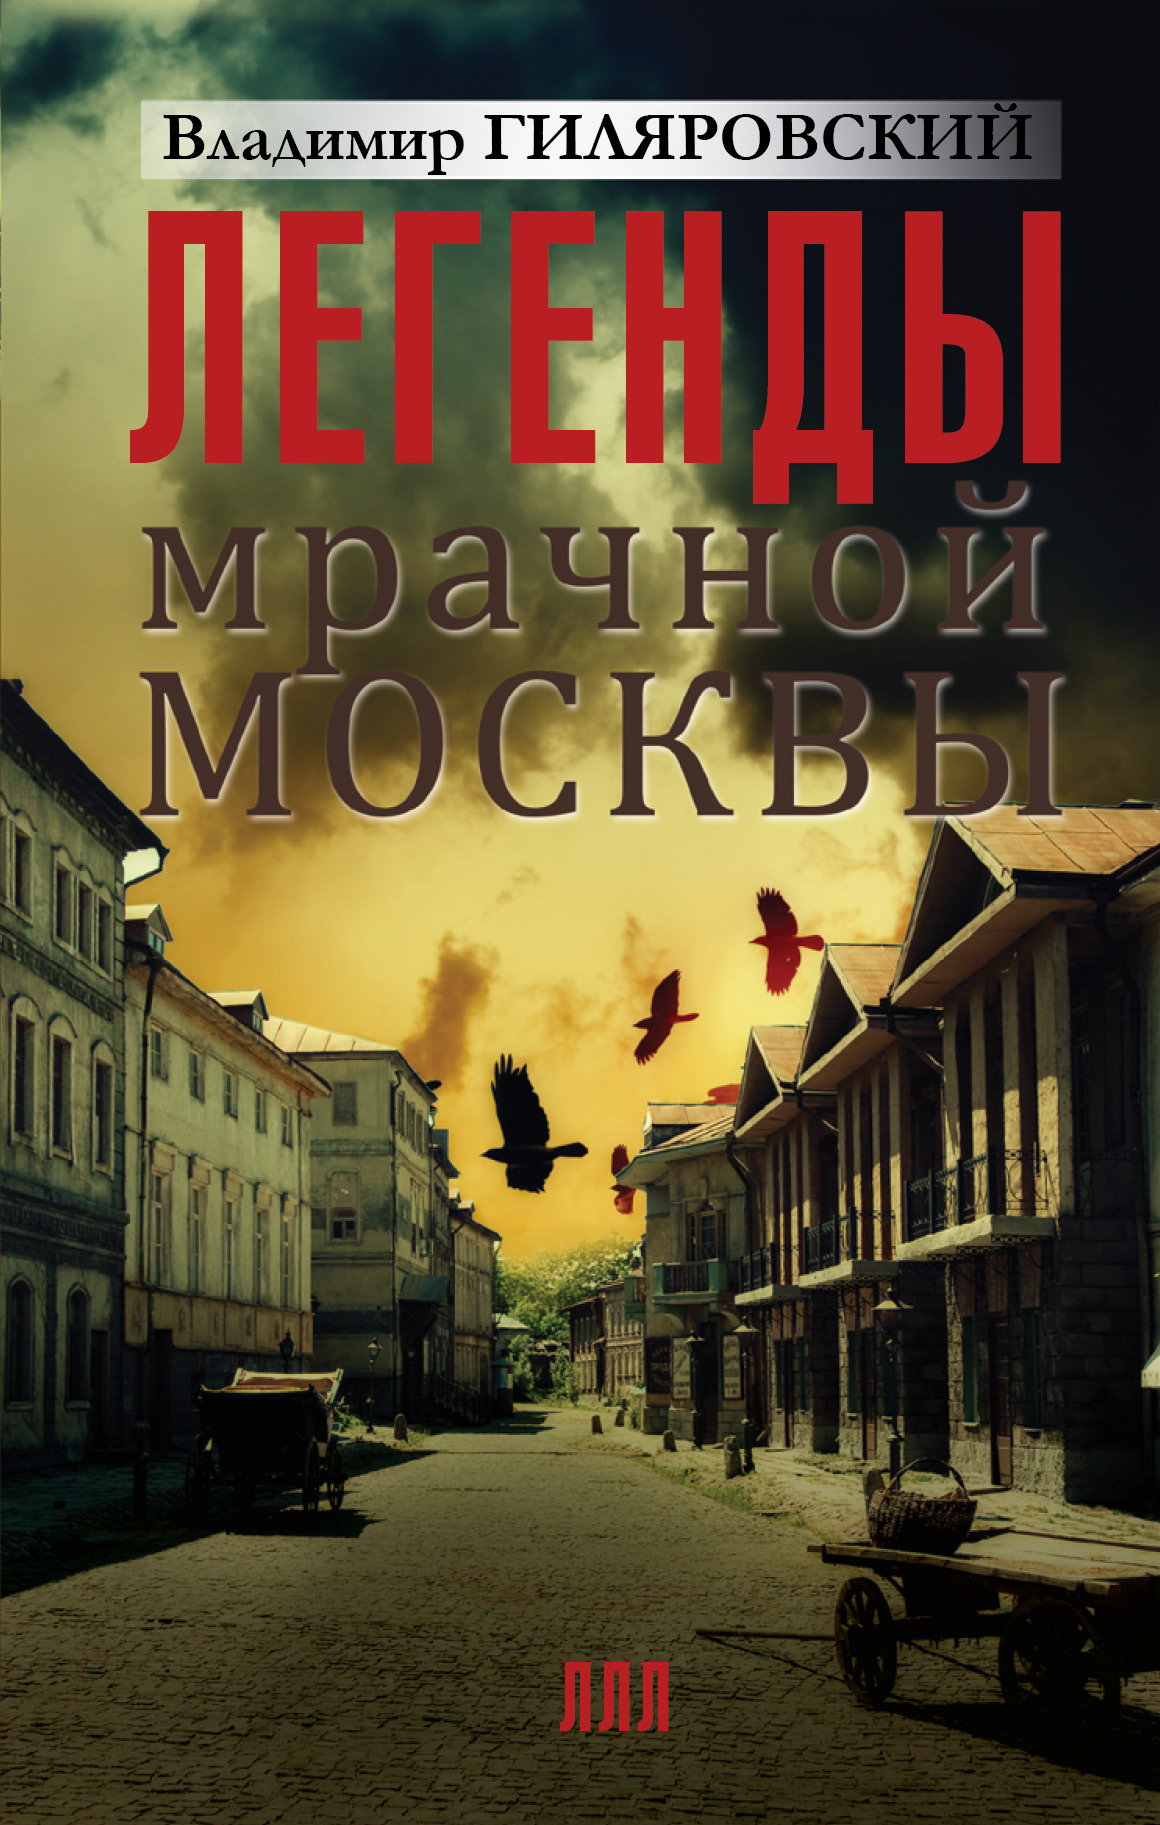 Скачать бесплатно книгу москва и москвичи гиляровского